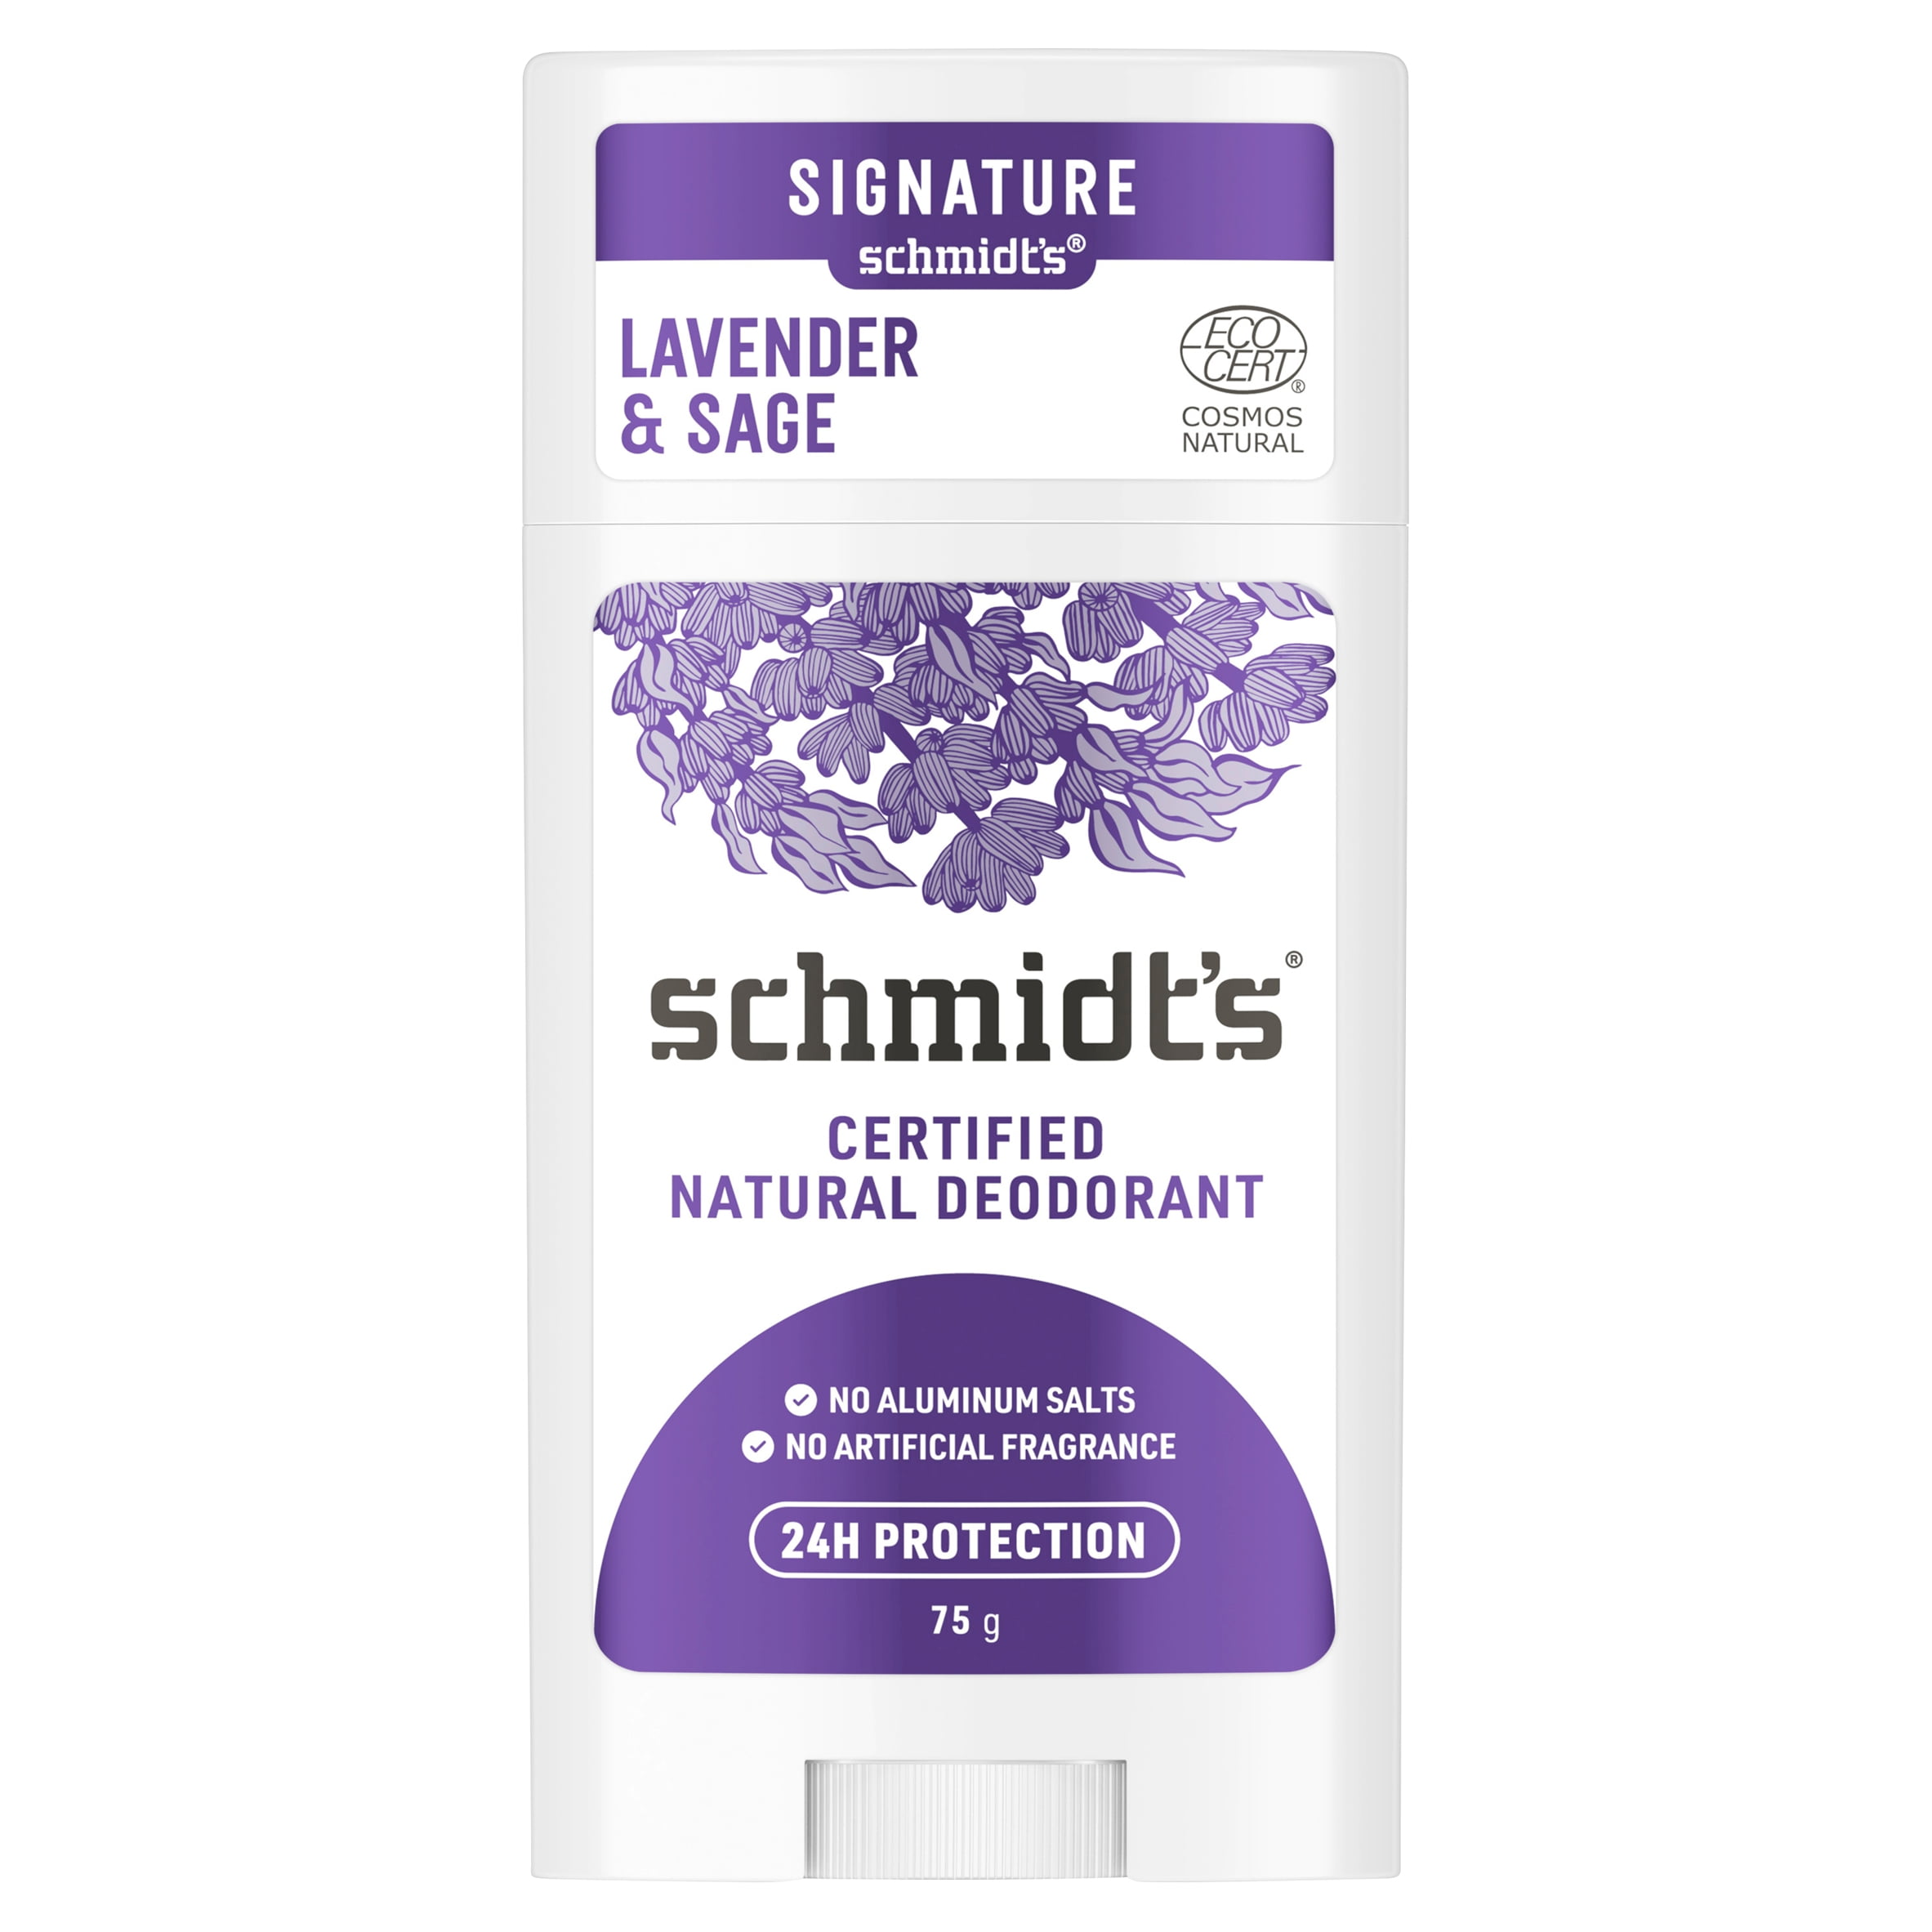 Schmidt's Natural Deodorant Lavender & Sage 2.65 oz